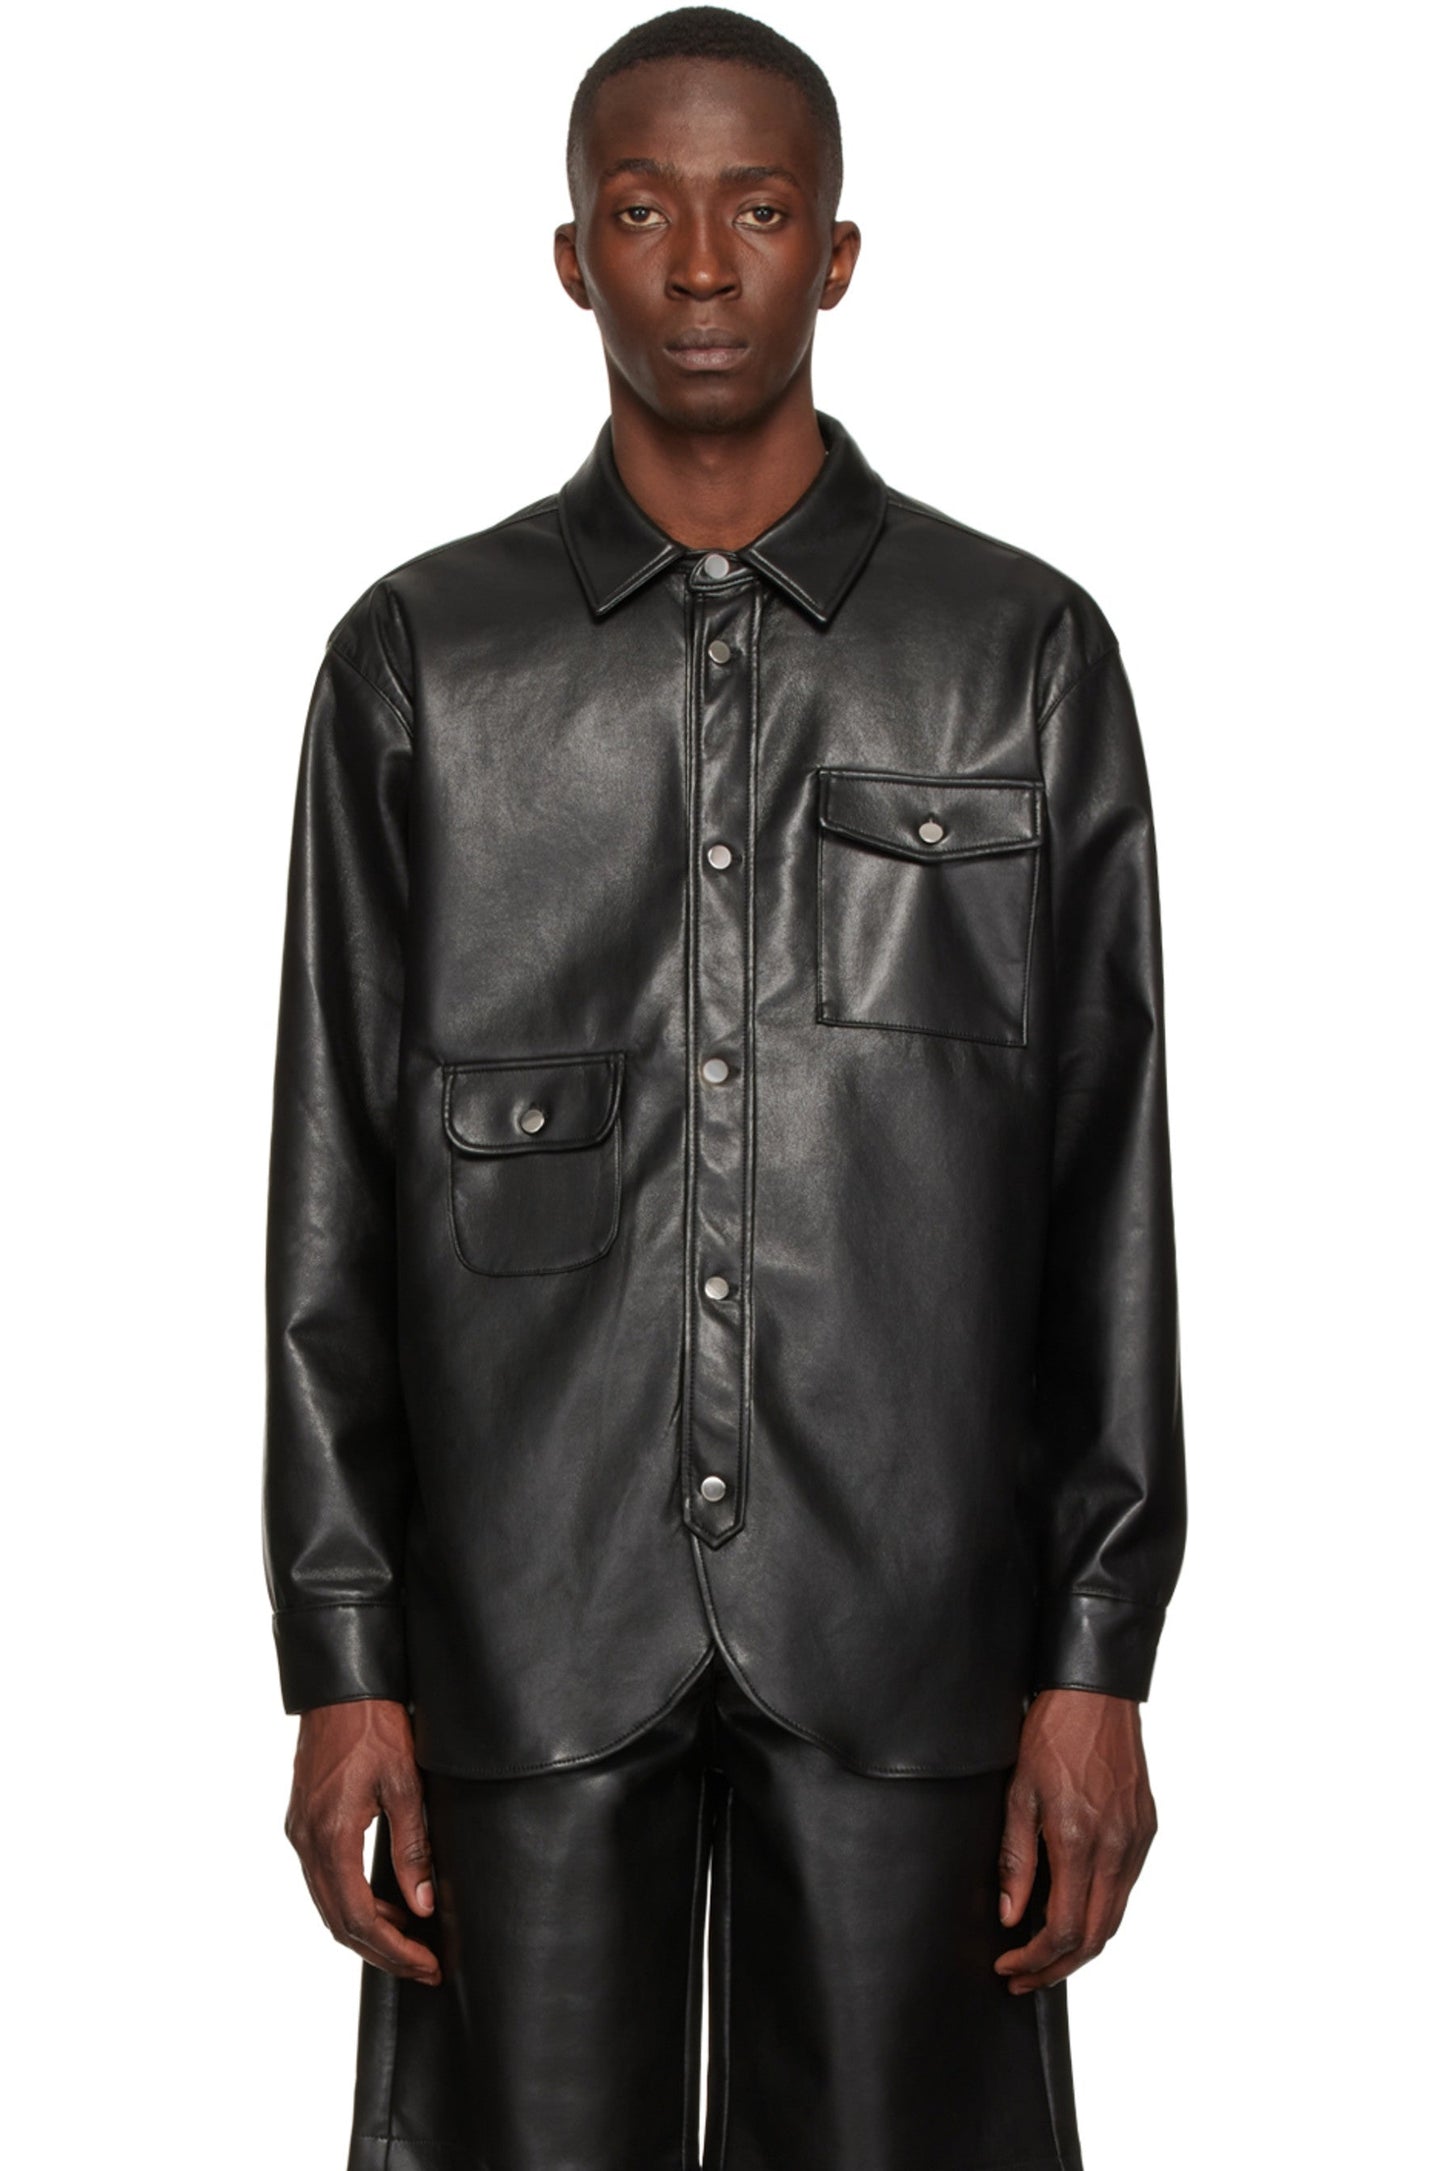 Men’s Trendy Black Leather Shirt Full Sleeves